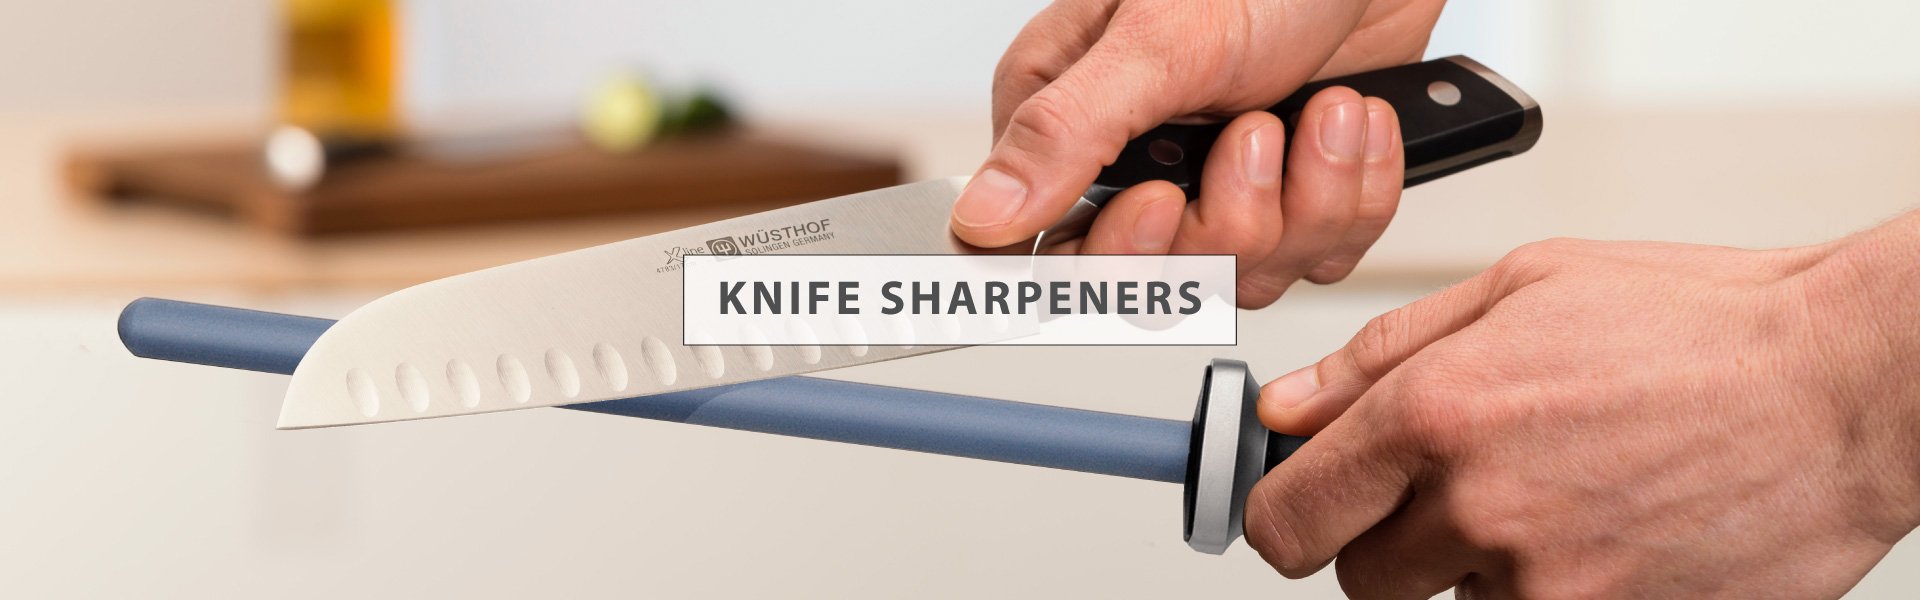 KNIFE SHARPENERS